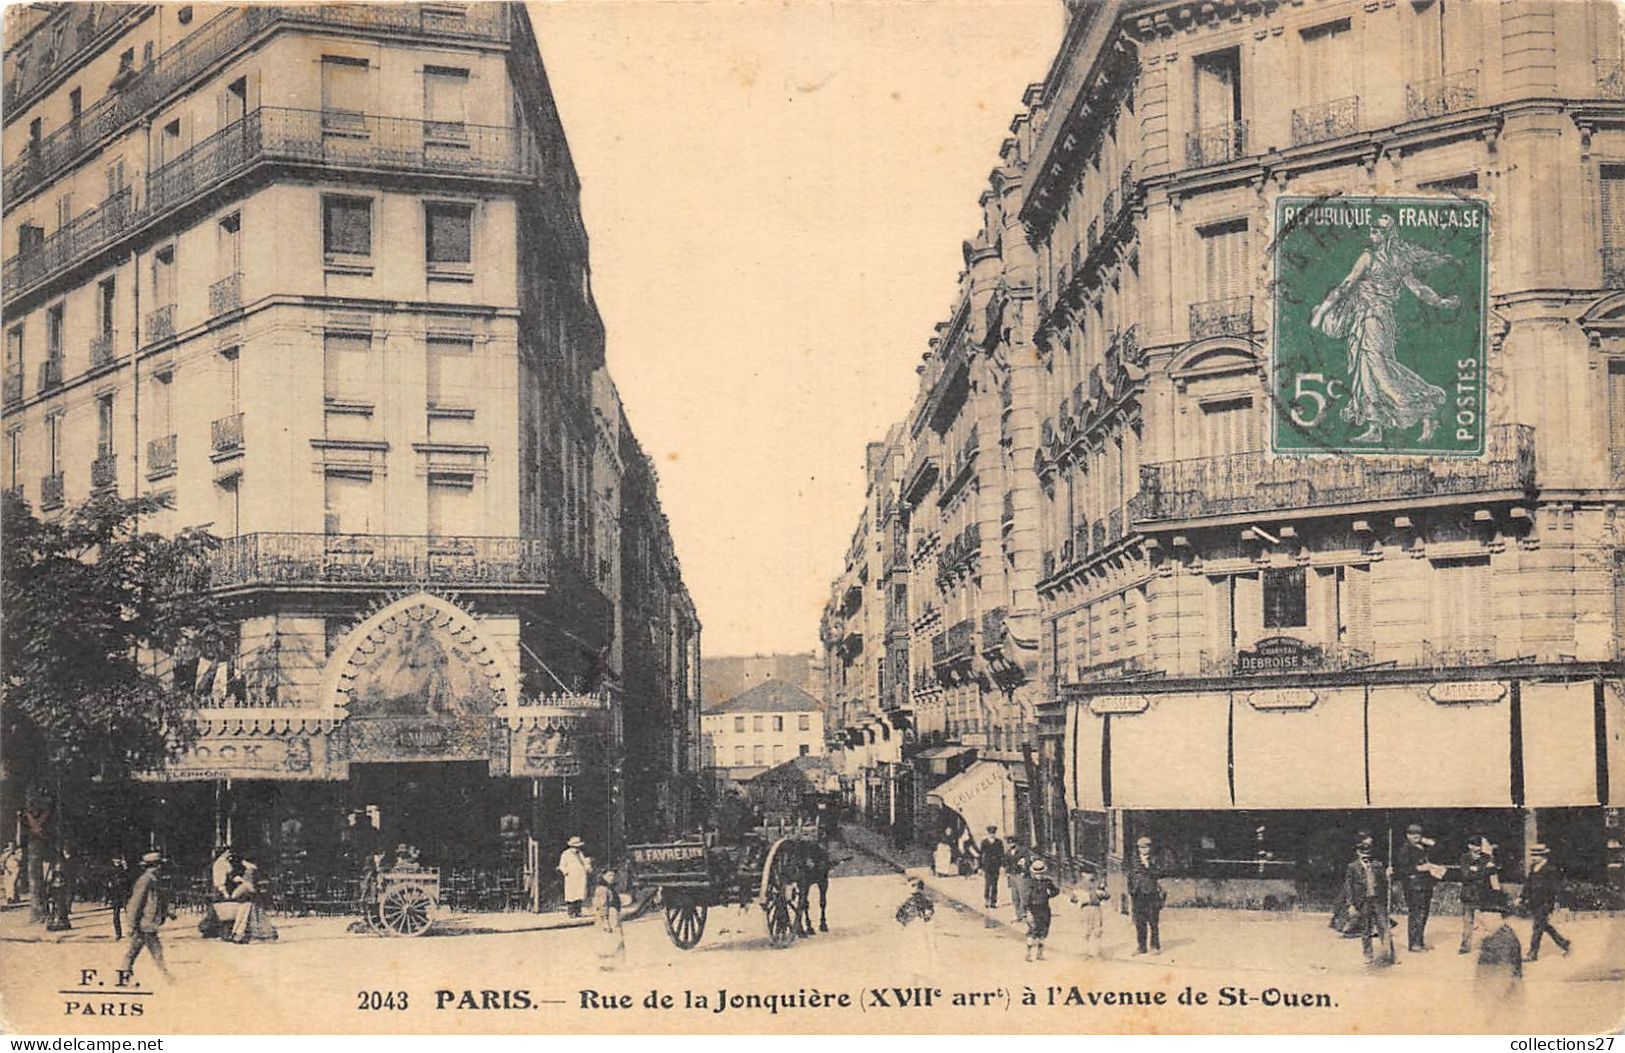 PARIS-75017- RUE DE LA JONQUIERE A L'AVENUE DE ST-OUEN - Paris (17)